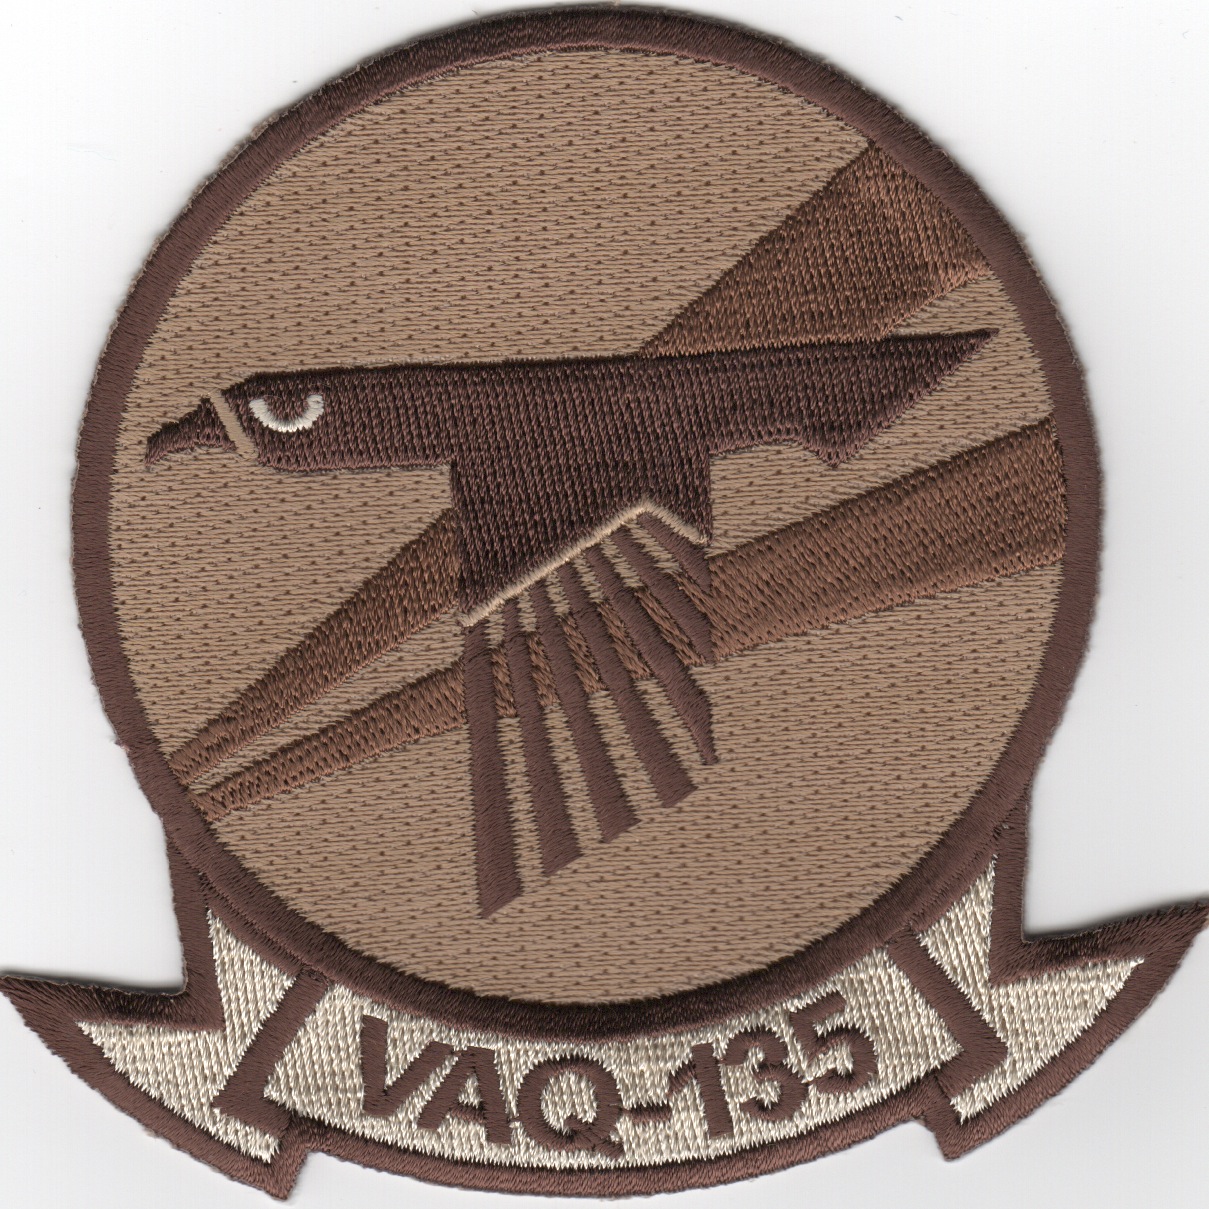 VAQ-135 Squadron Patch (Des)